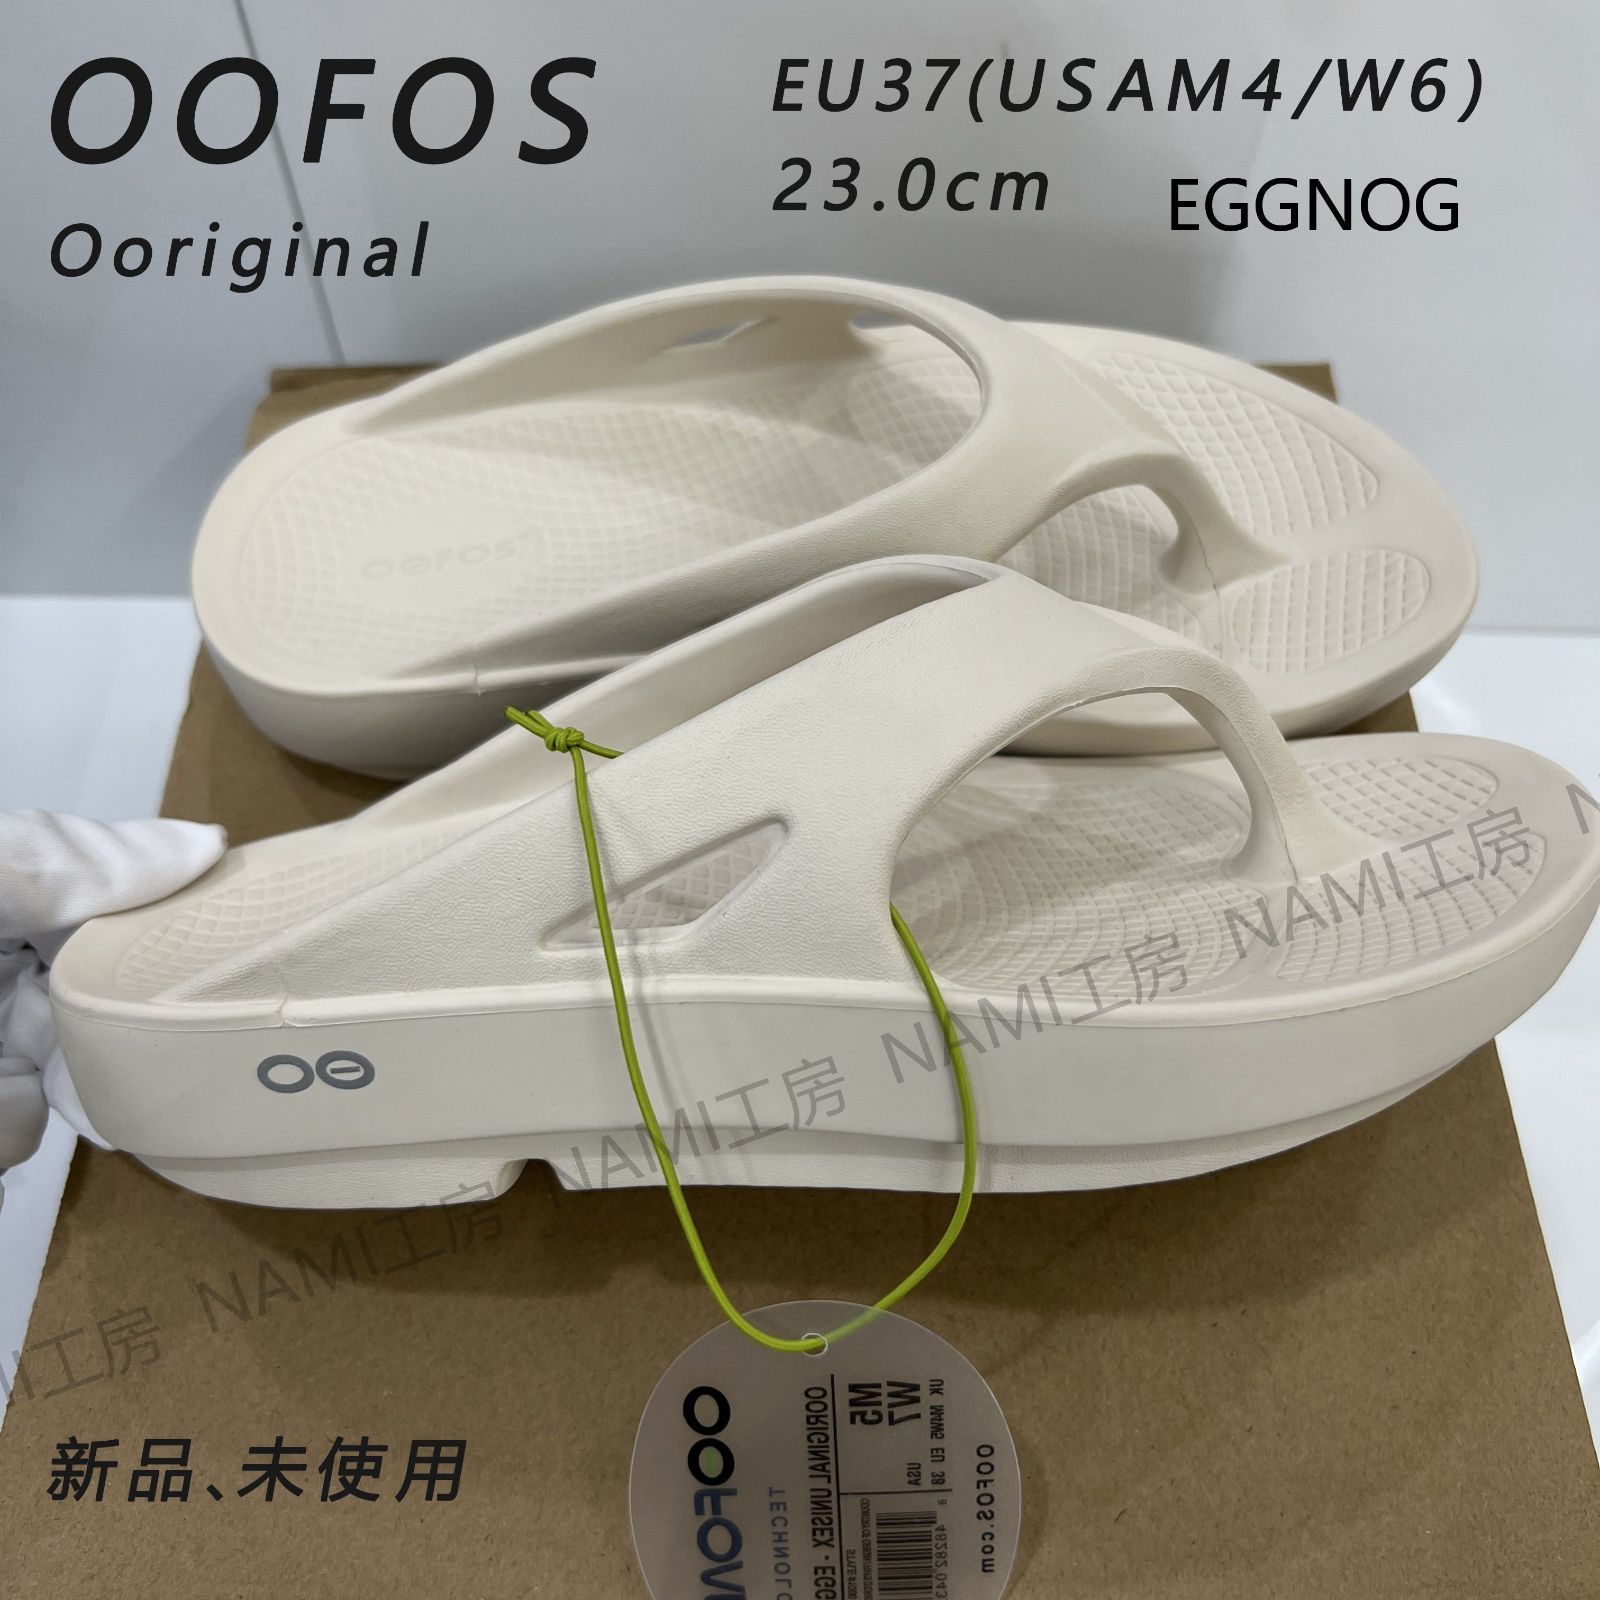 OOFOS Ooriginal ウーフォス オリジナル メンズ レディース男女